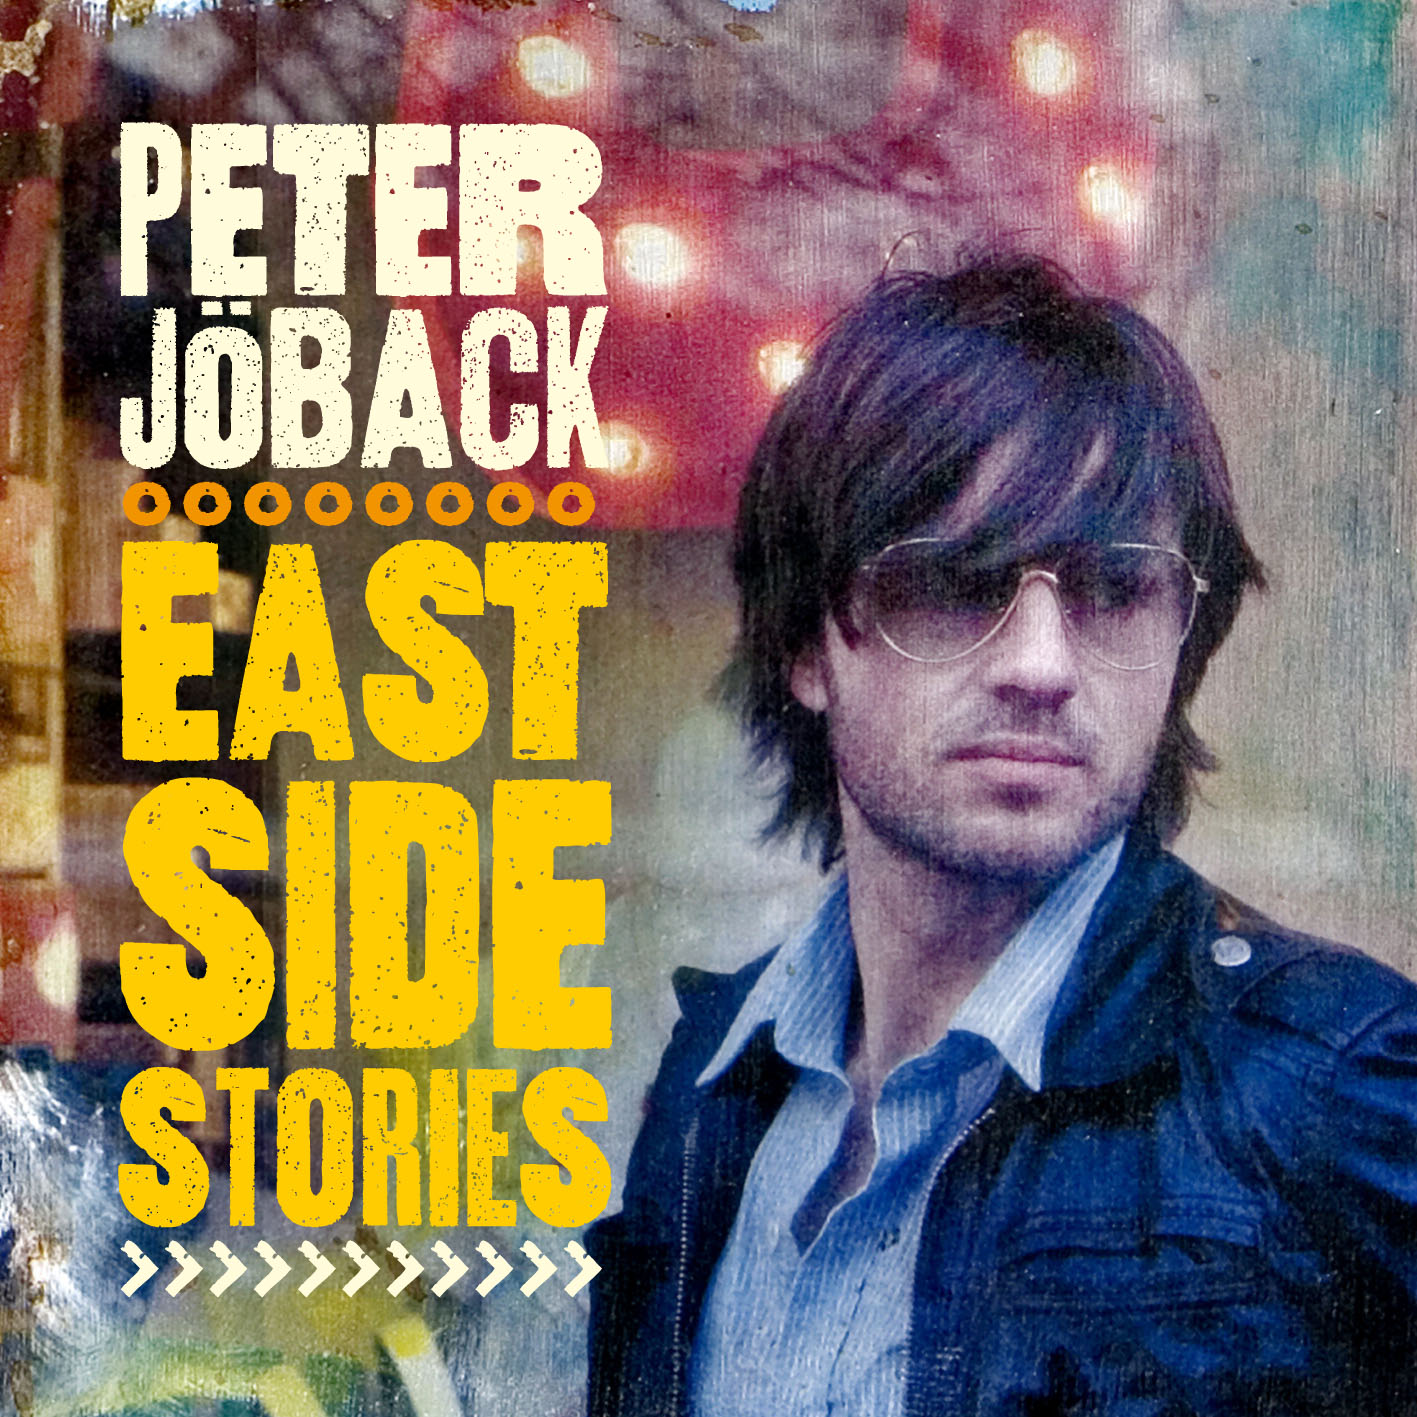 Peter J back - East Side Stories - CD